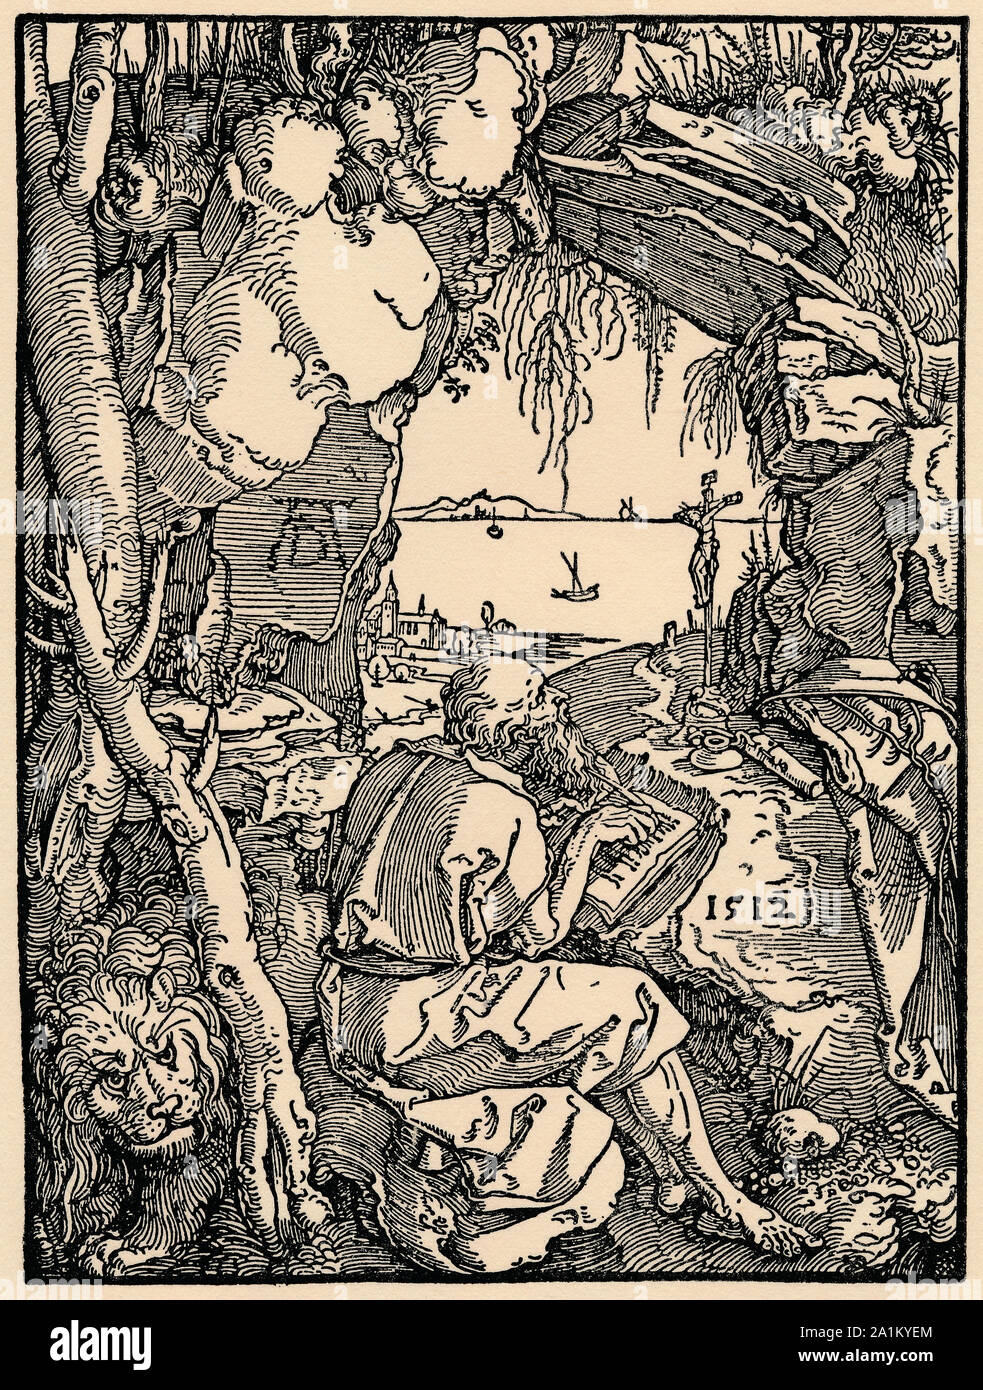 Albrecht Dürer, Hieronymus in der Zelle, Hieronymus in the cell, Albrecht Dürer Stock Photo